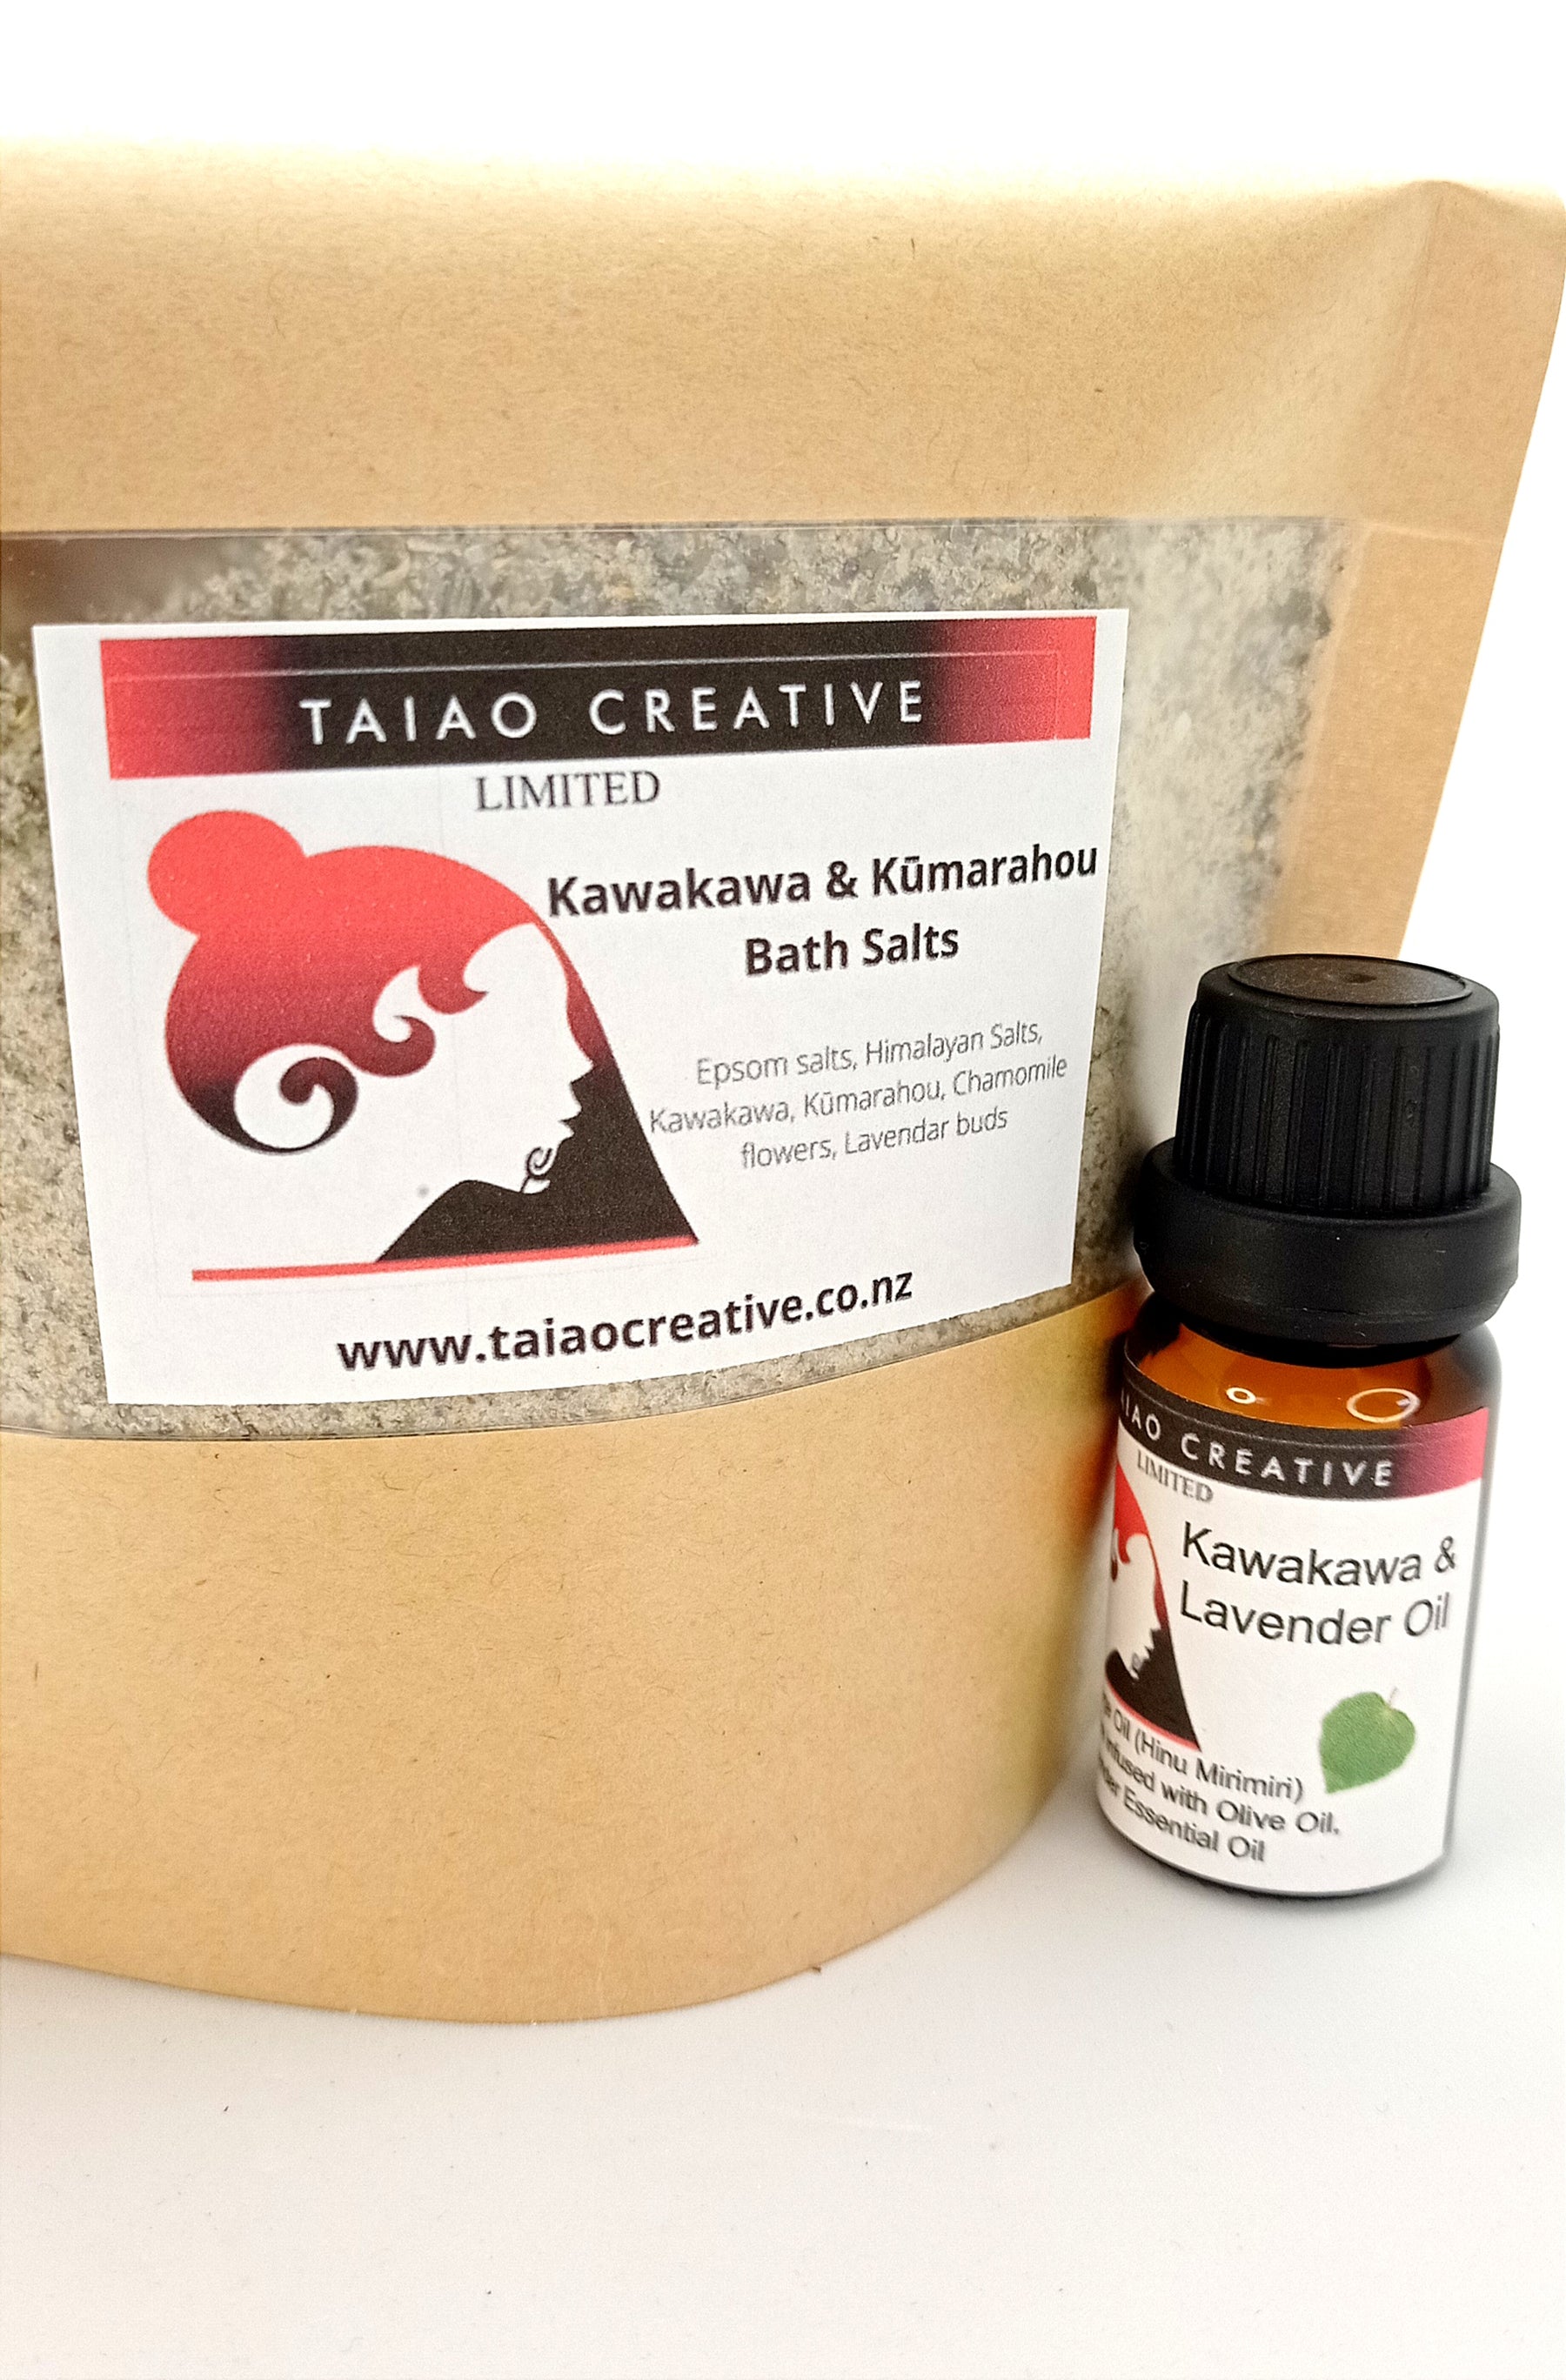 Kumarahou & Kawakawa Bath Salts